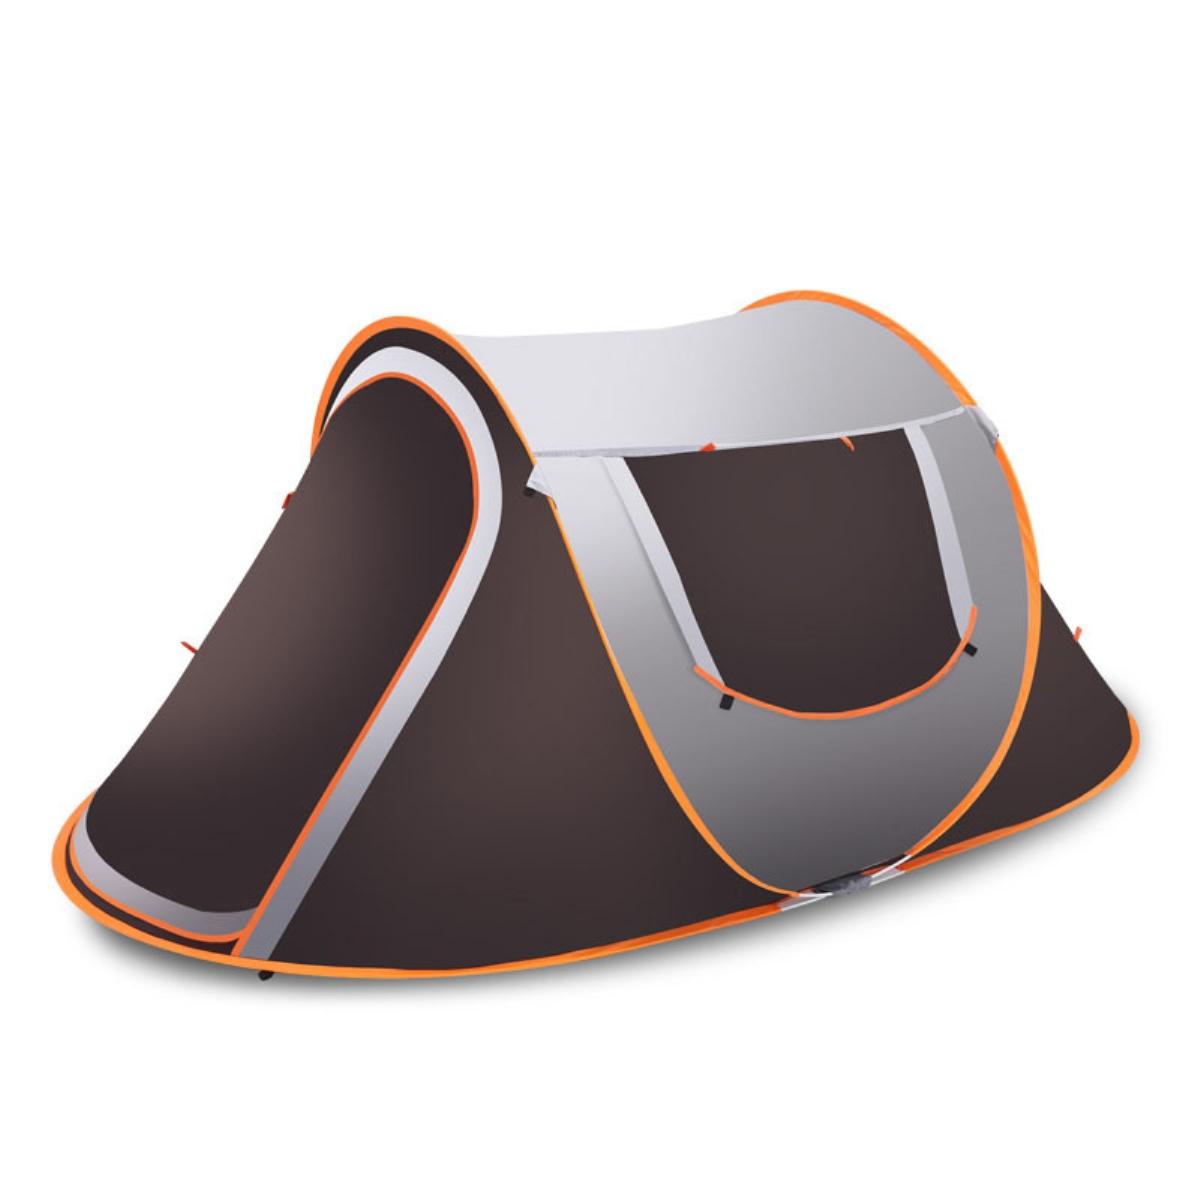 Pop-up-tent voor 3-4 personen, waterdicht, met zonnescherm en regenbescherming, ideaal voor kamperen en wandelen.